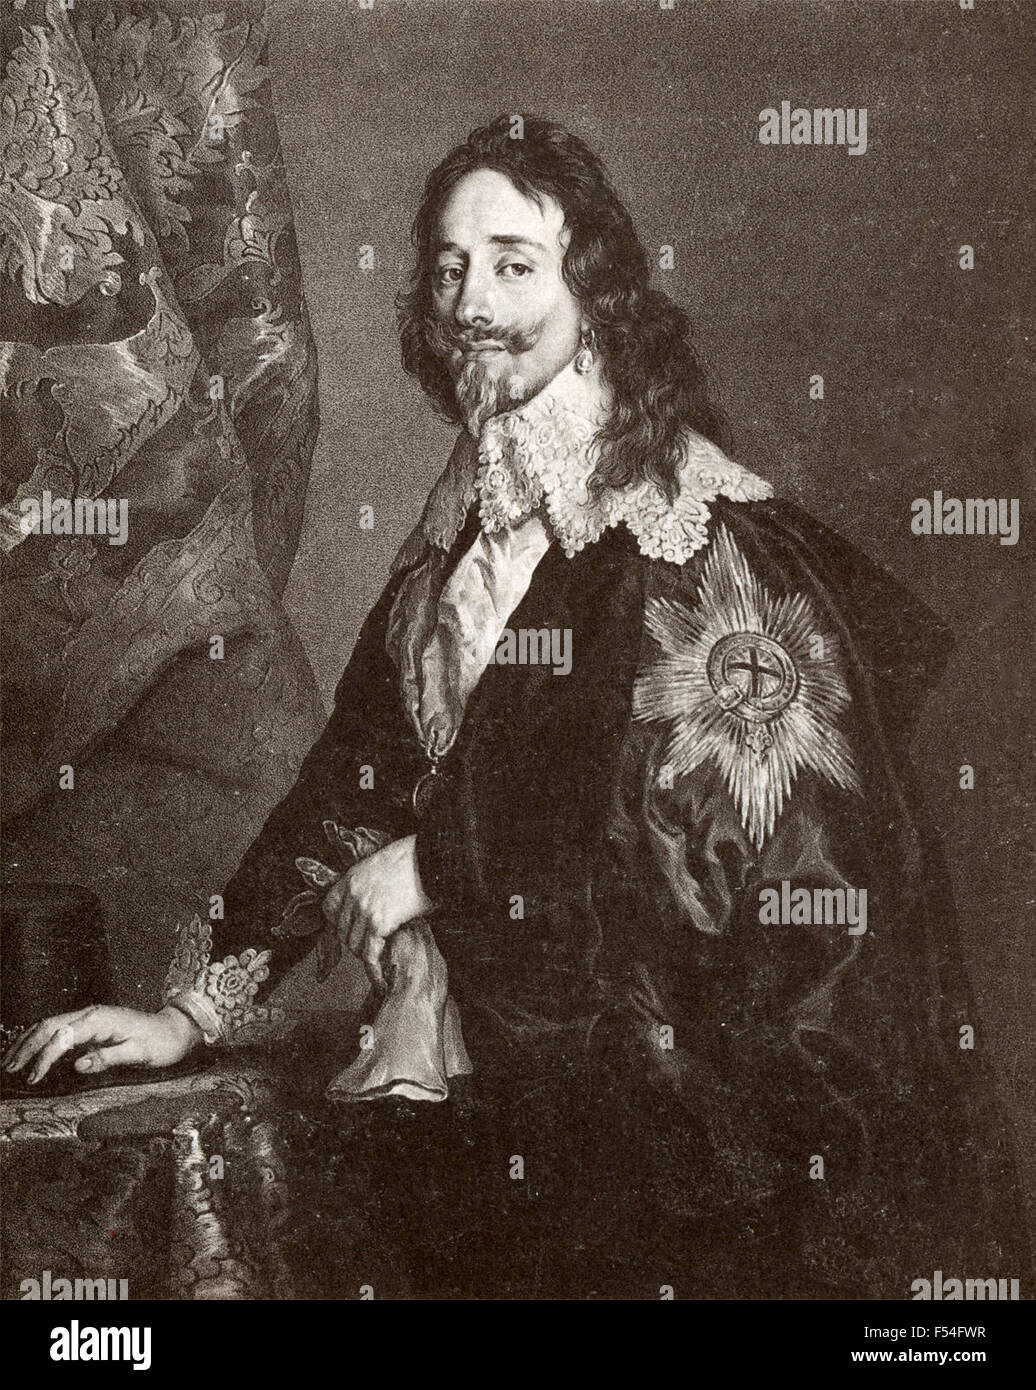 Portrait du Roi Charles I d'Angleterre, peint par Van Dyck Banque D'Images